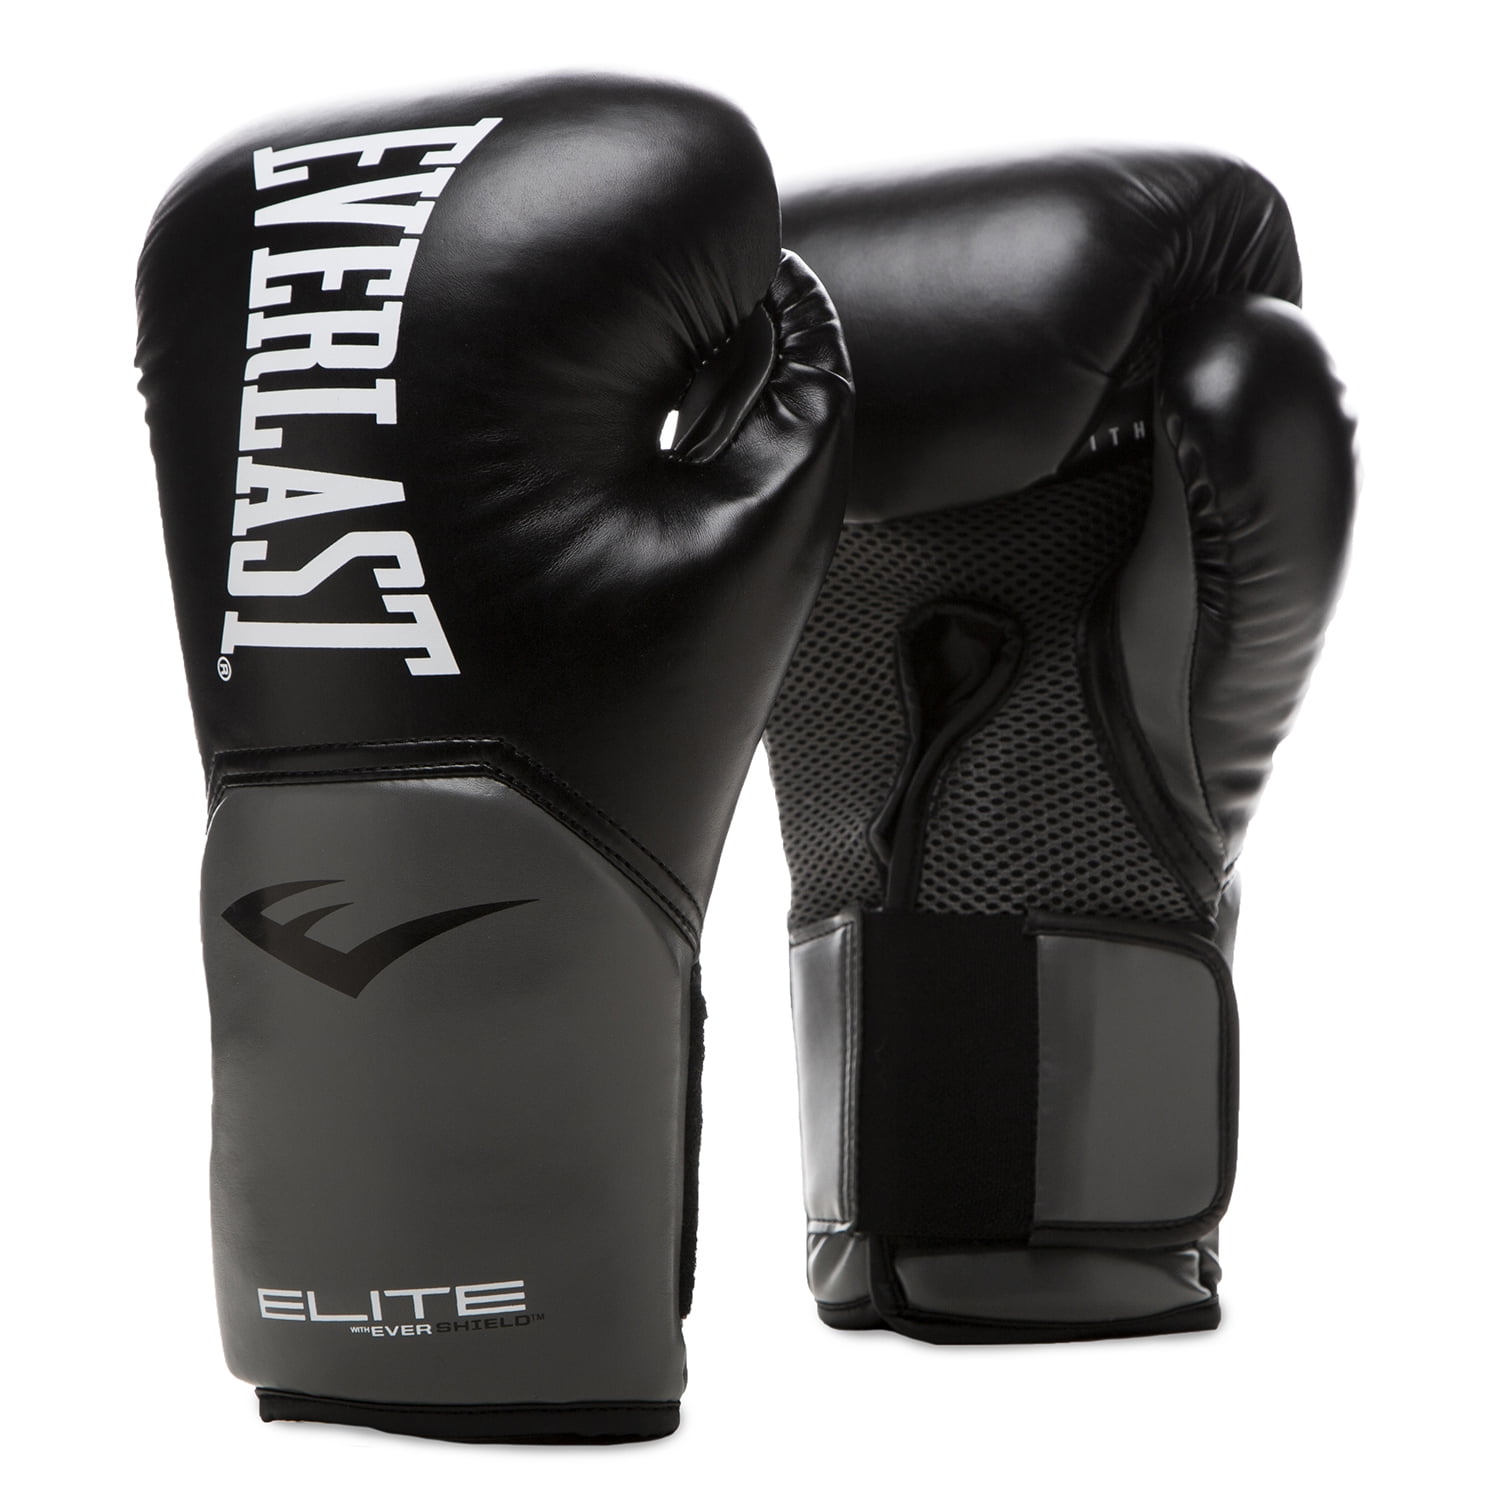 Elite V2 Boxing Training Glove 8 Oz Black/Grey